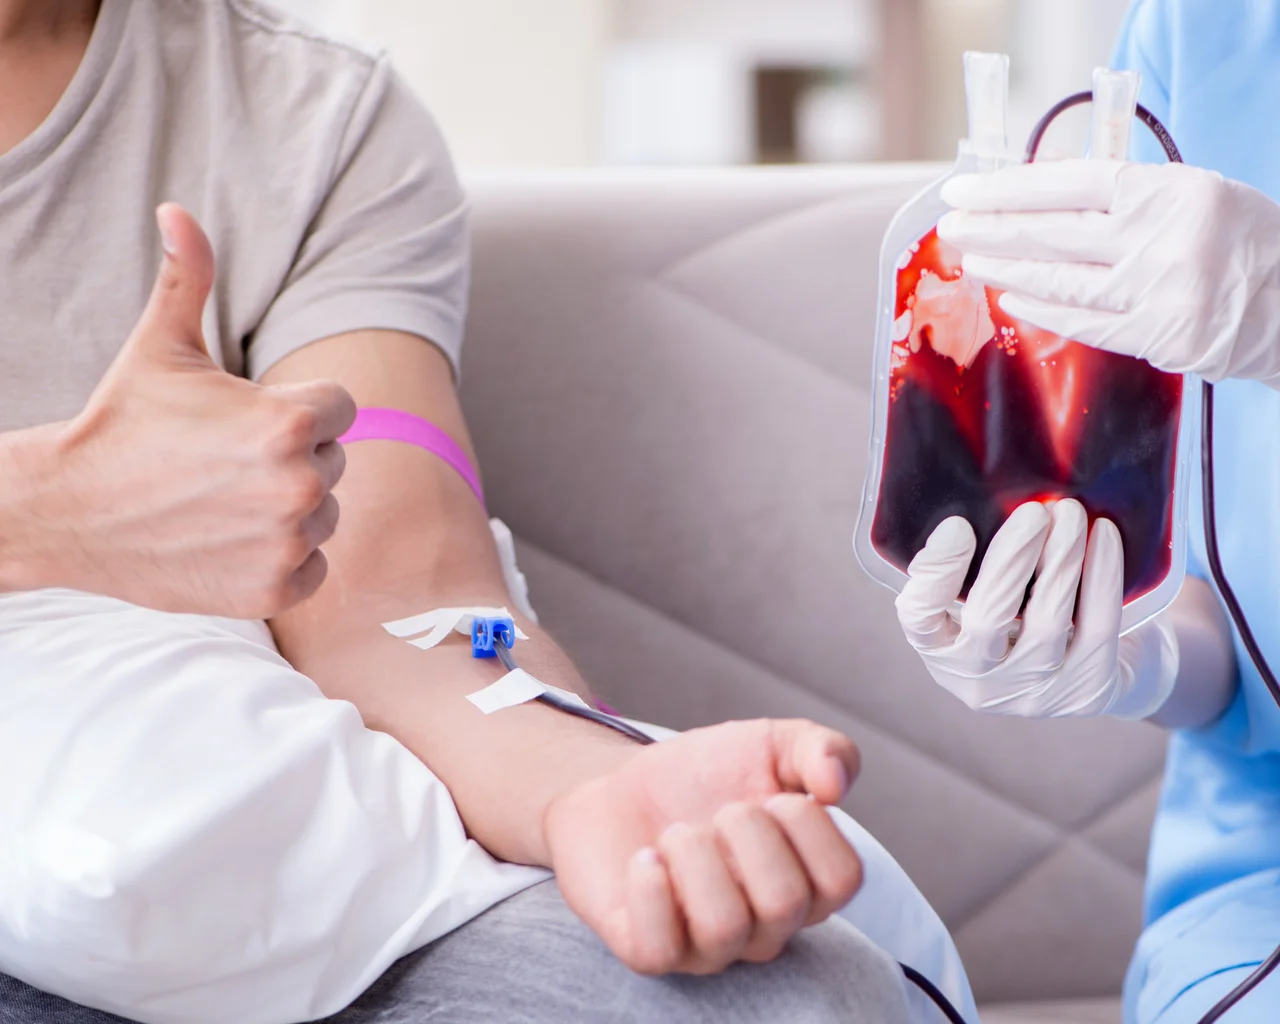 Urlop za oddanie krwi – komu przysługuje?